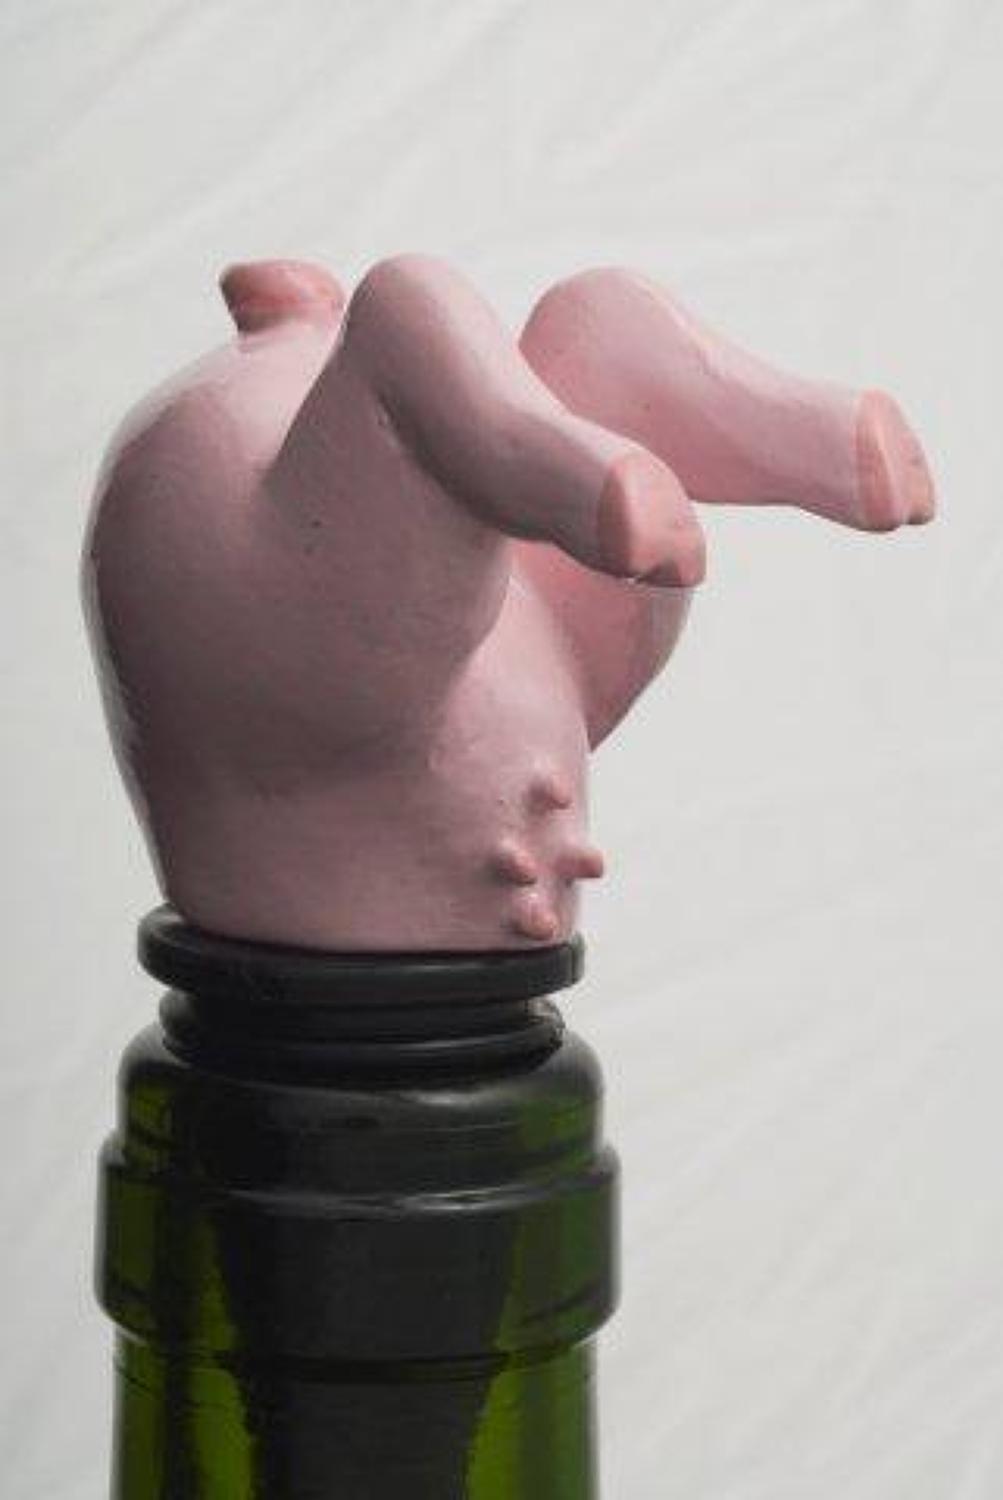 Pig bottle stopper